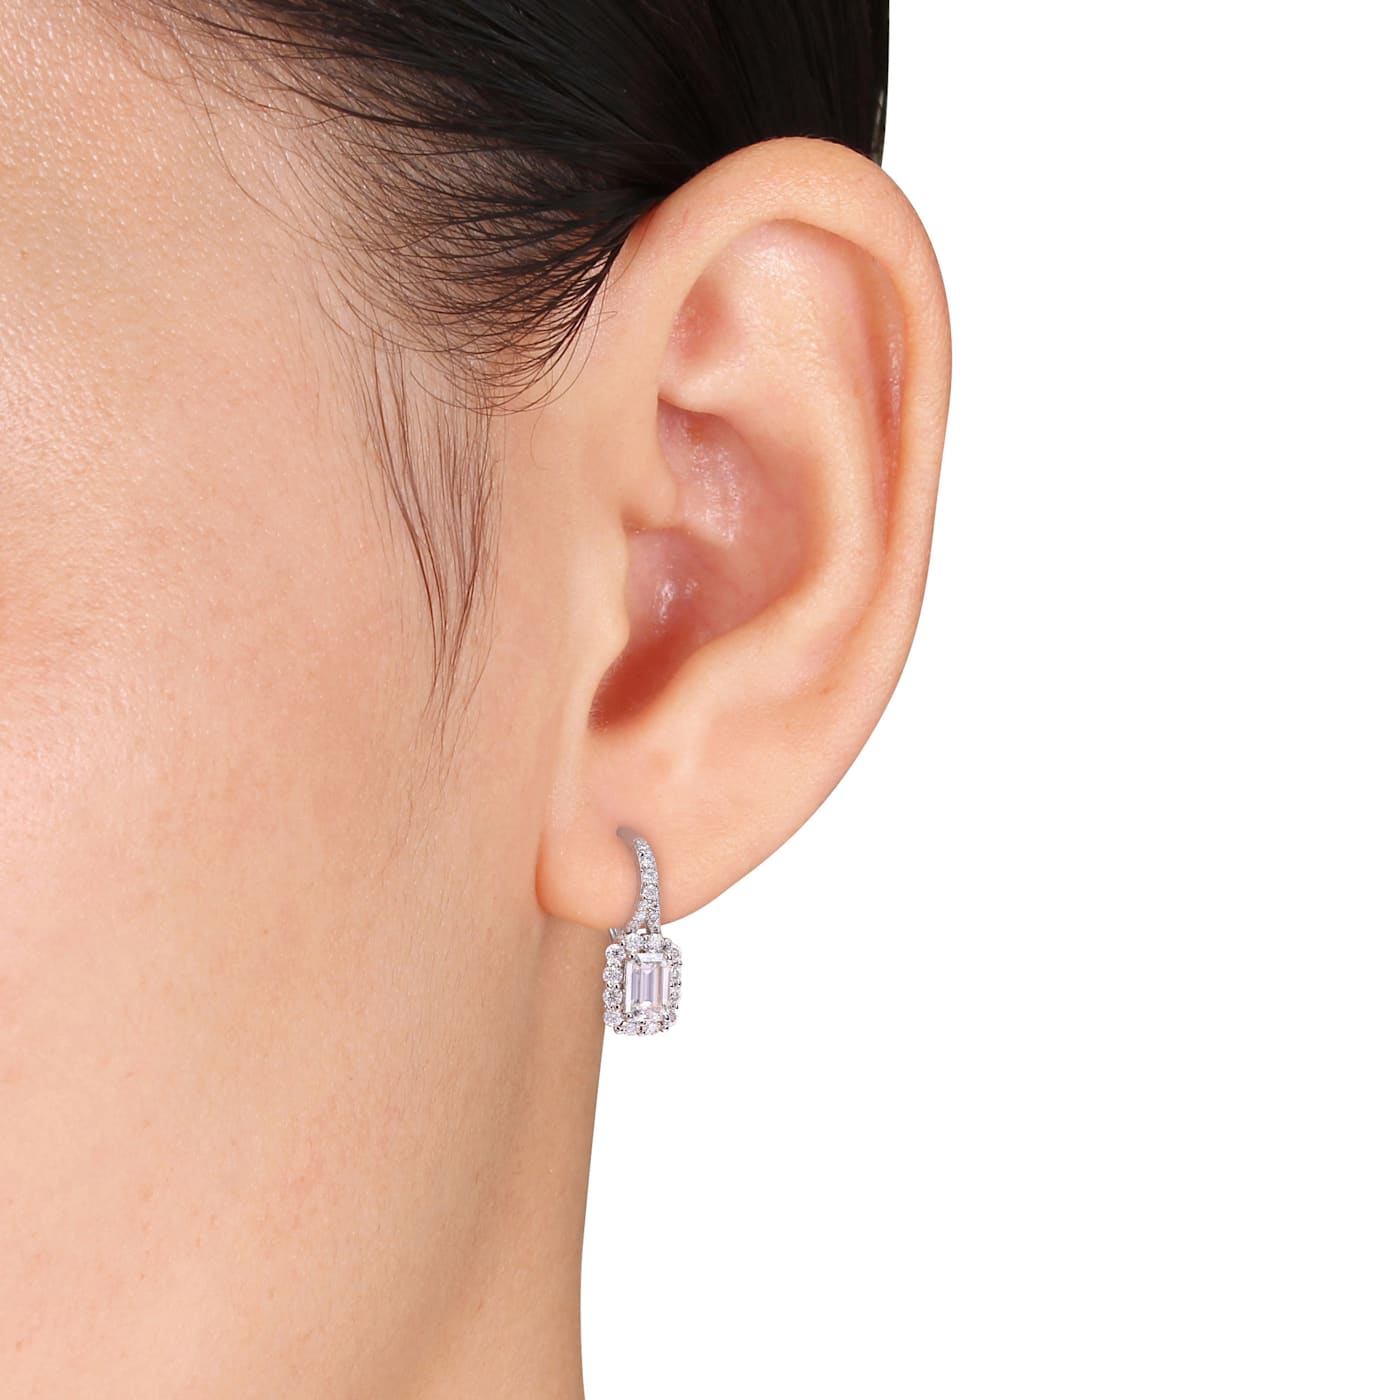 New Louis Vuitton Bionic Piercing Woman Earrings One Size S221